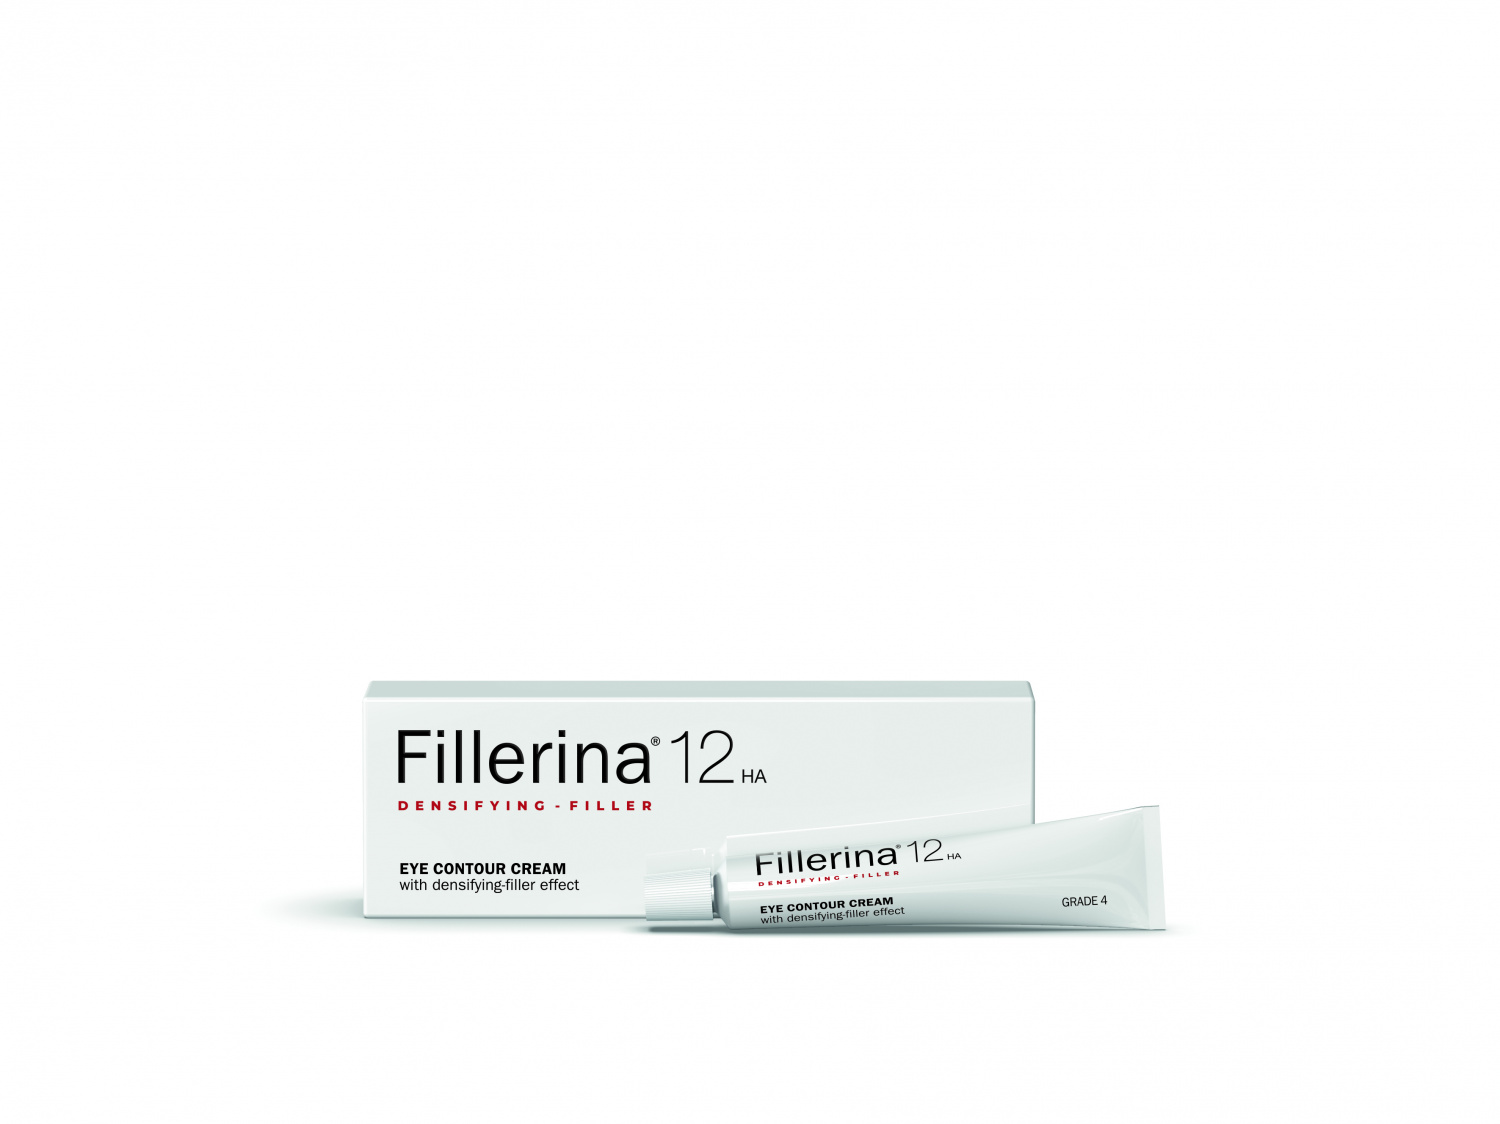 Fillerina 12 Densifying-Filler Eye Contour Cream Grade 4 15ml - интернет-магазин профессиональной косметики Spadream, изображение 37565